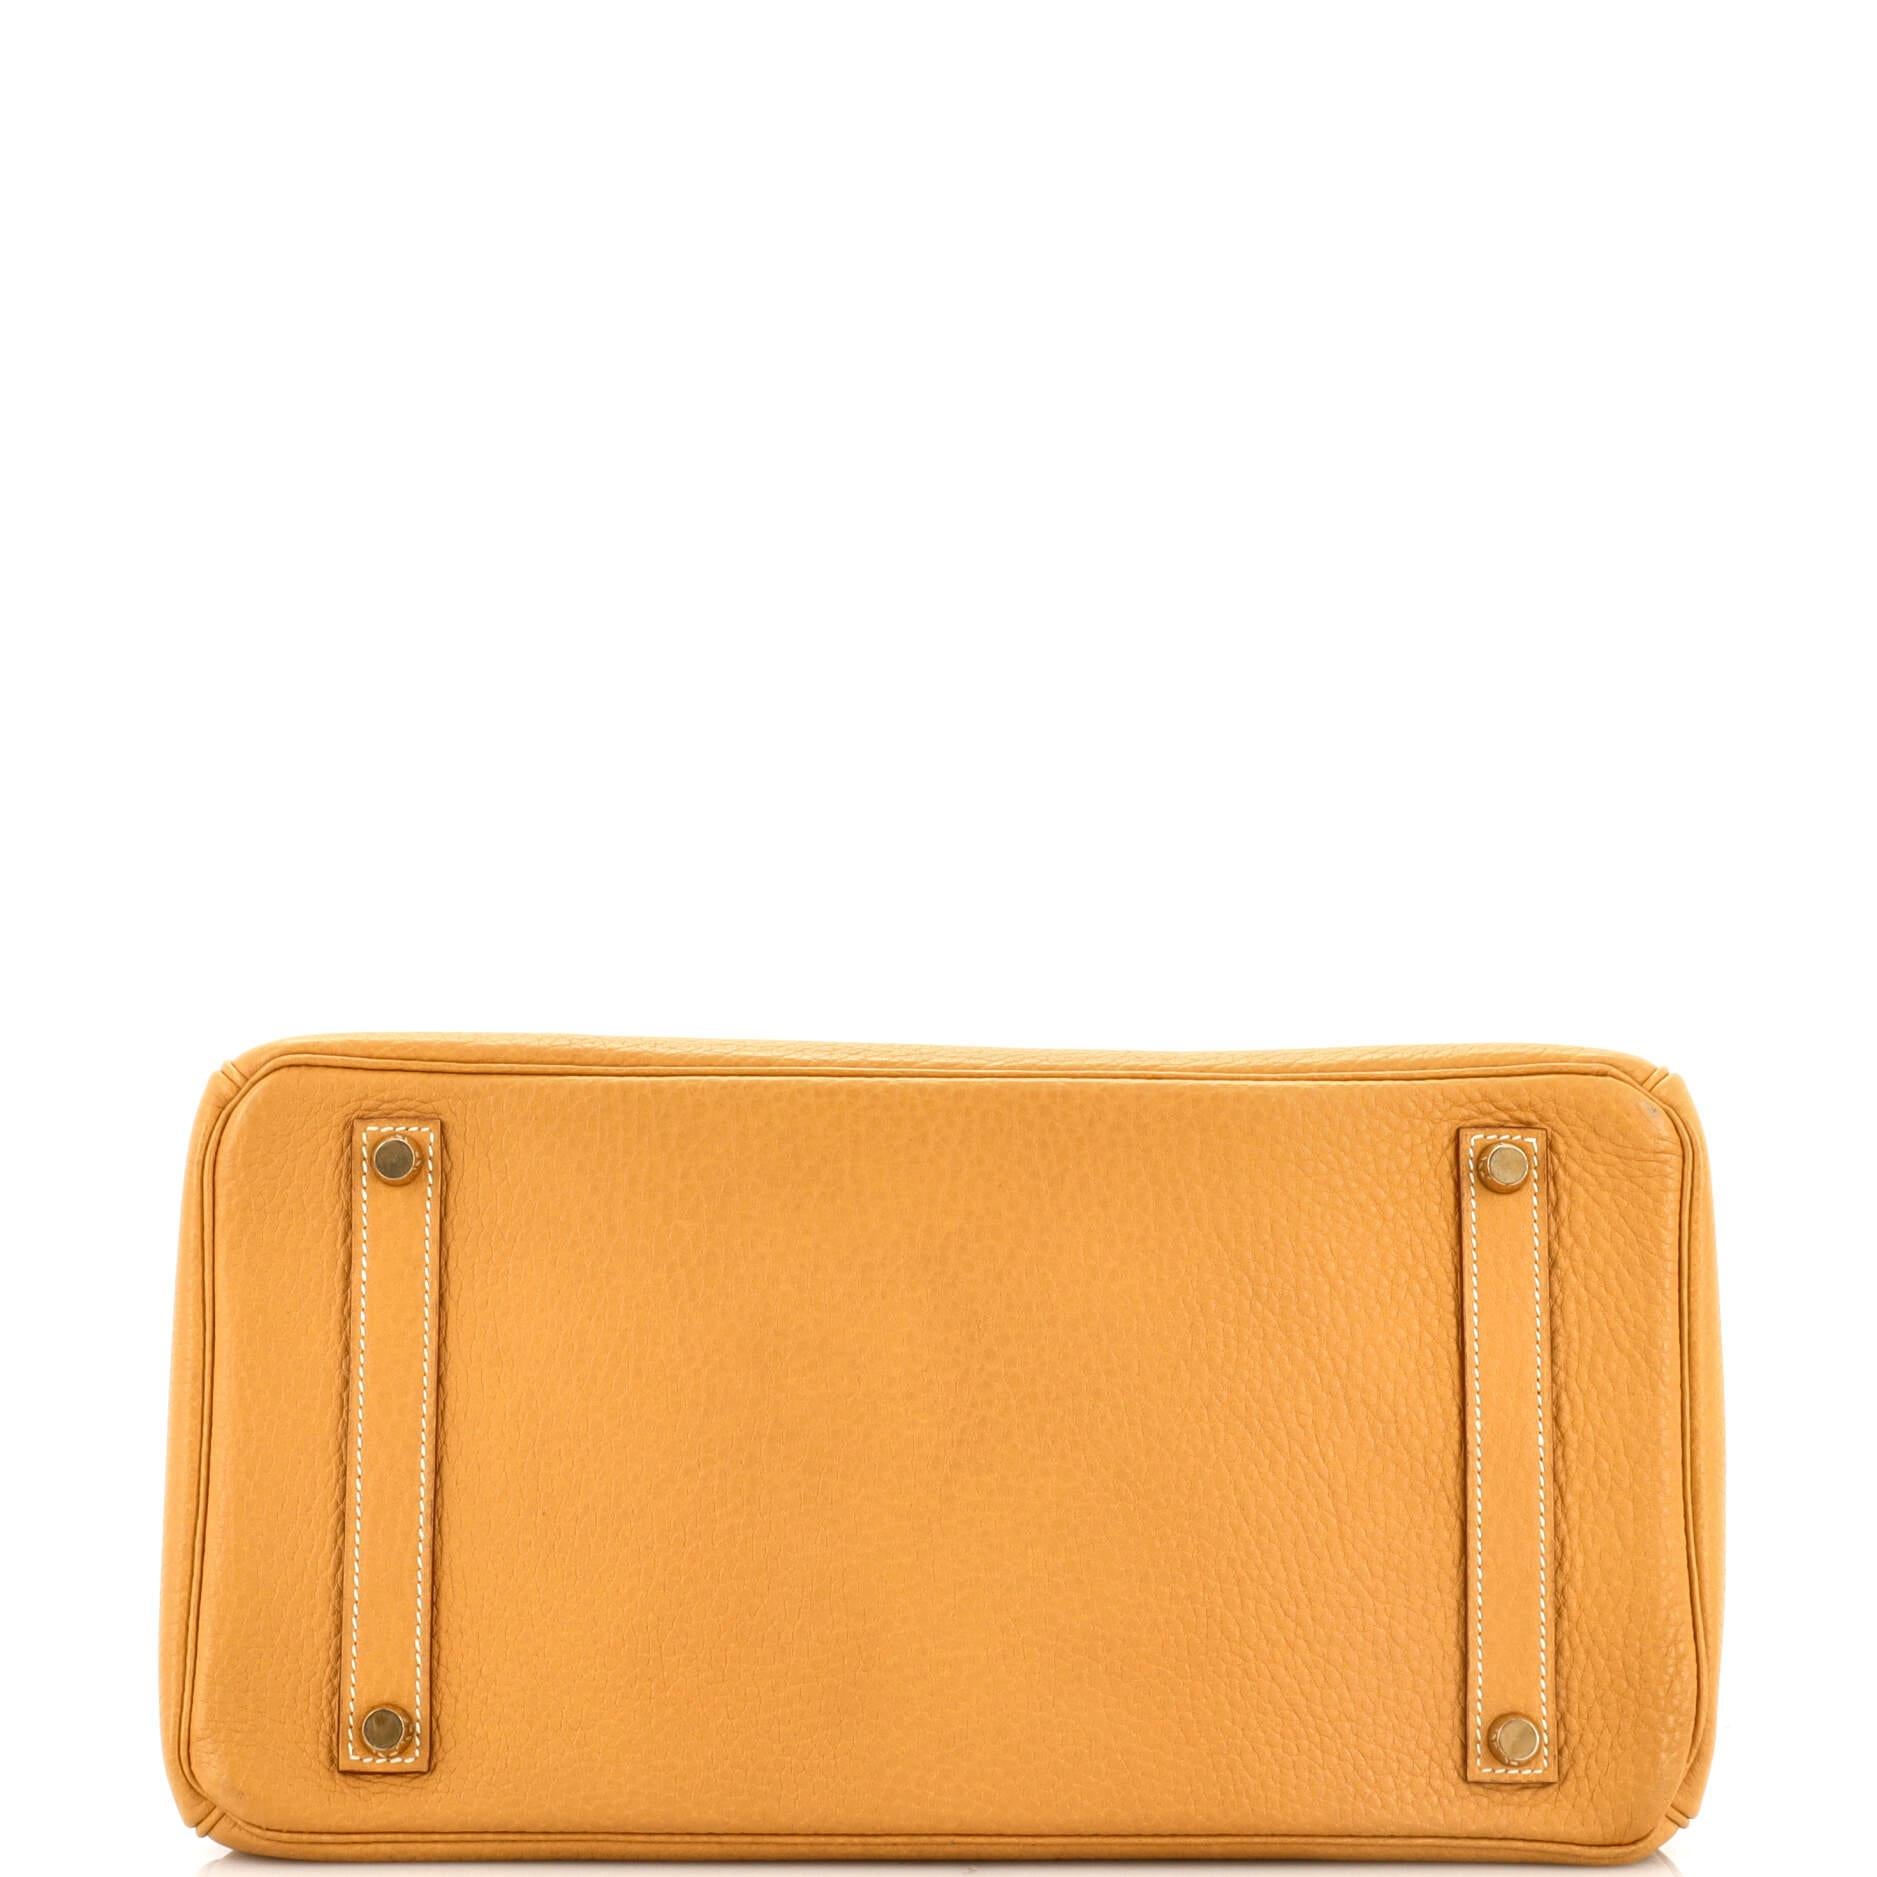 Women's or Men's Hermes Birkin Handbag Natural Sable Fjord with Gold Hardware 35